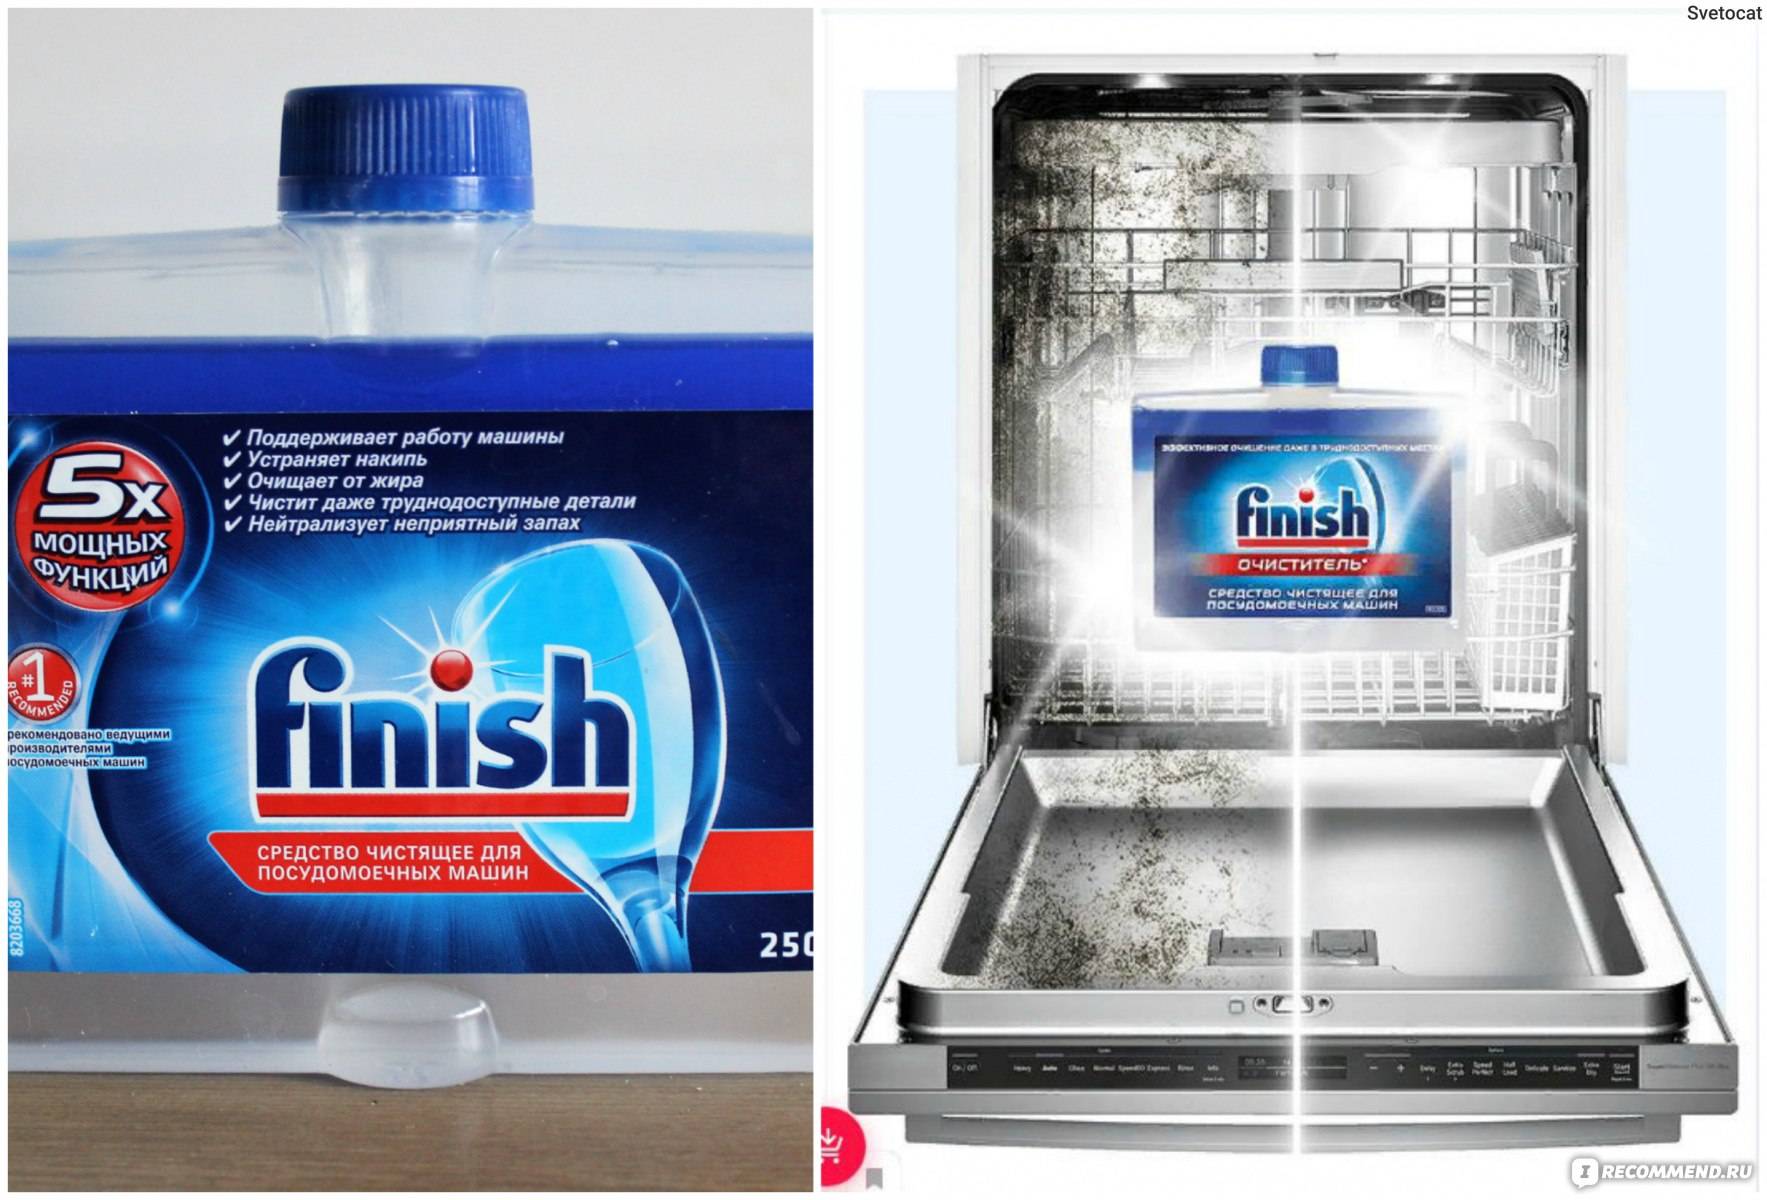 Сколько моет посудомоечная машина. Реклама посудомоечной машины. Очиститель для посудомоечных машин finish. Чистка посудомоечной машины. Finish для посудомоечных машин реклама.